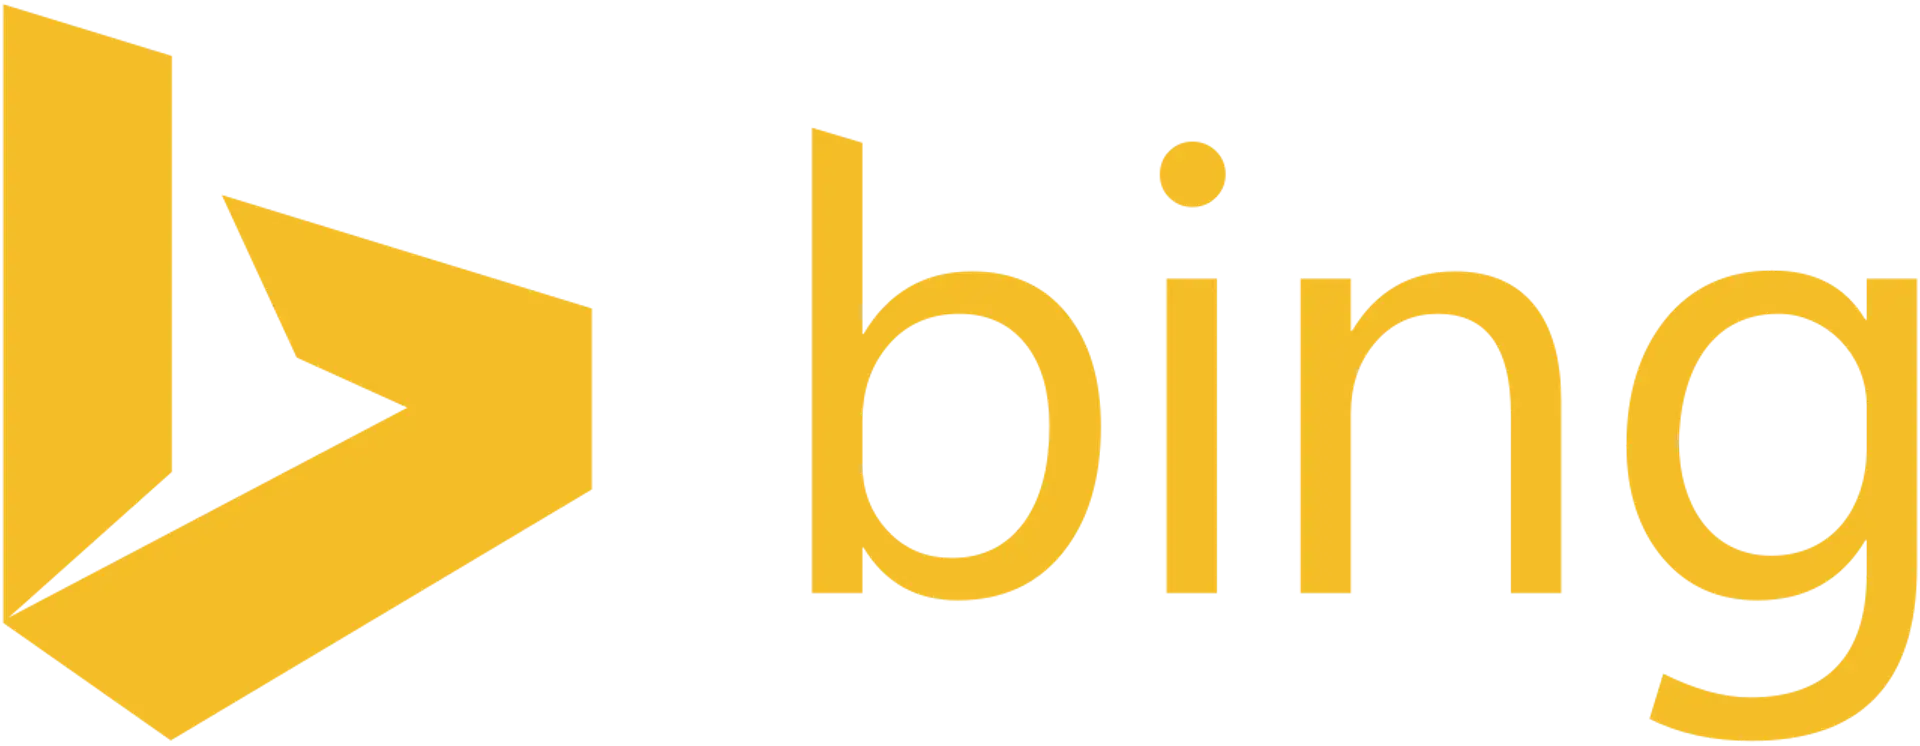 Bing logo 2013 to 2016